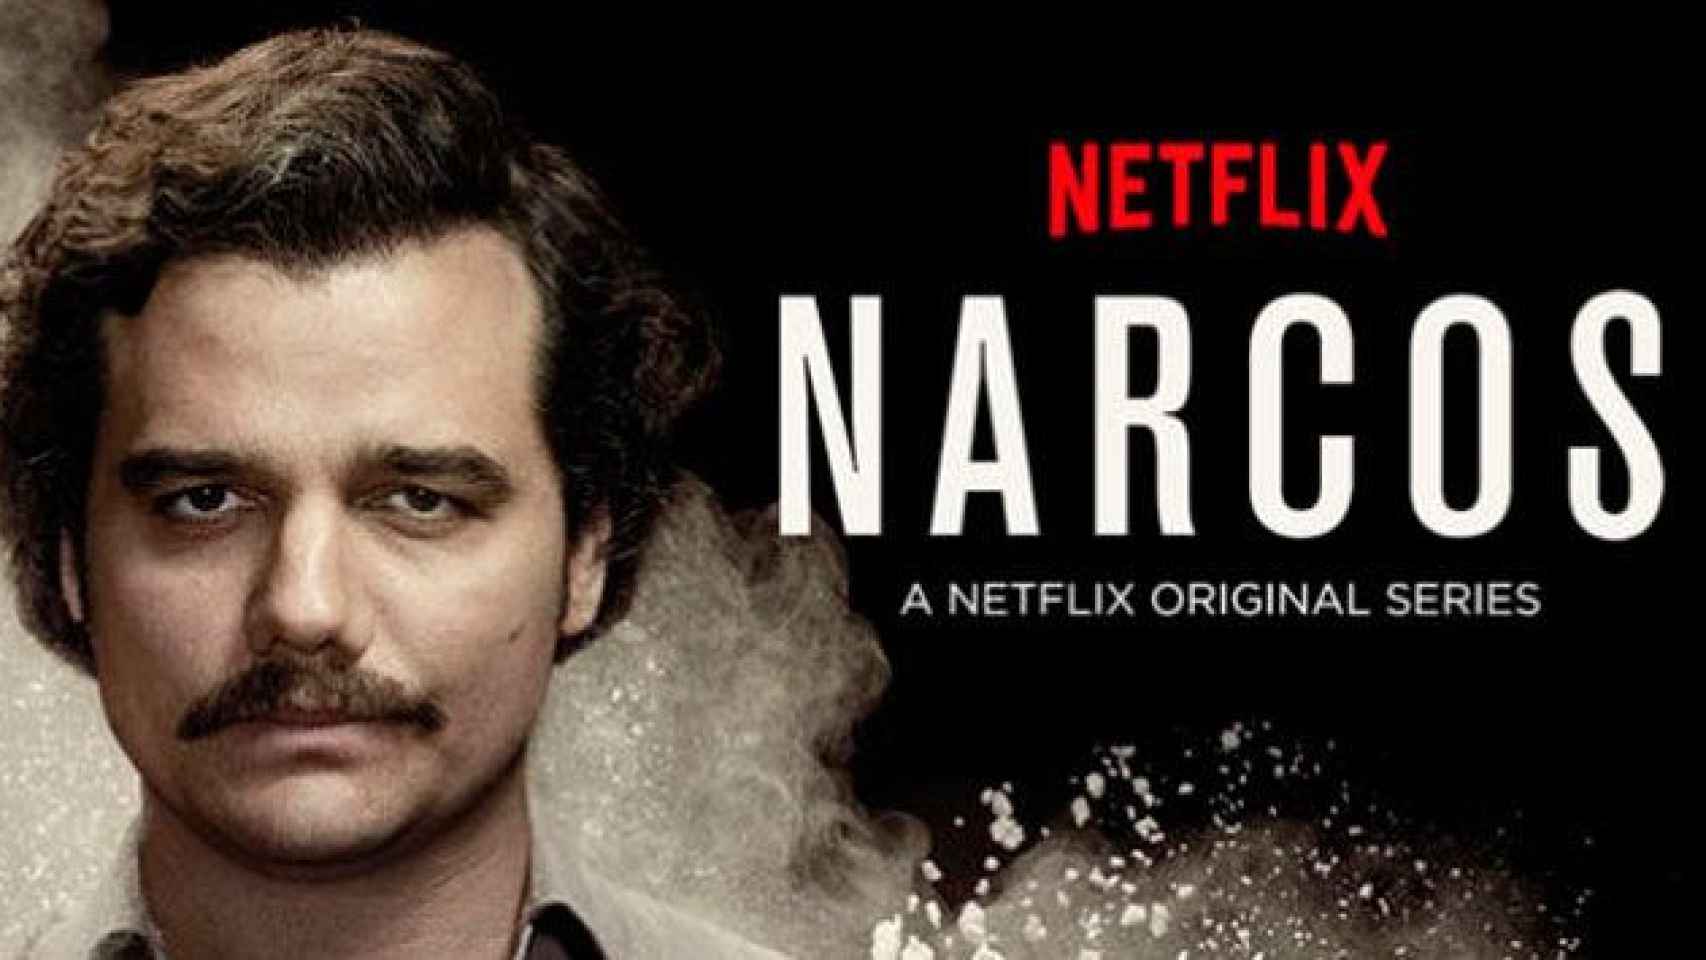 Cartel de Narcos, una de las series más famosas de Netflix / CG